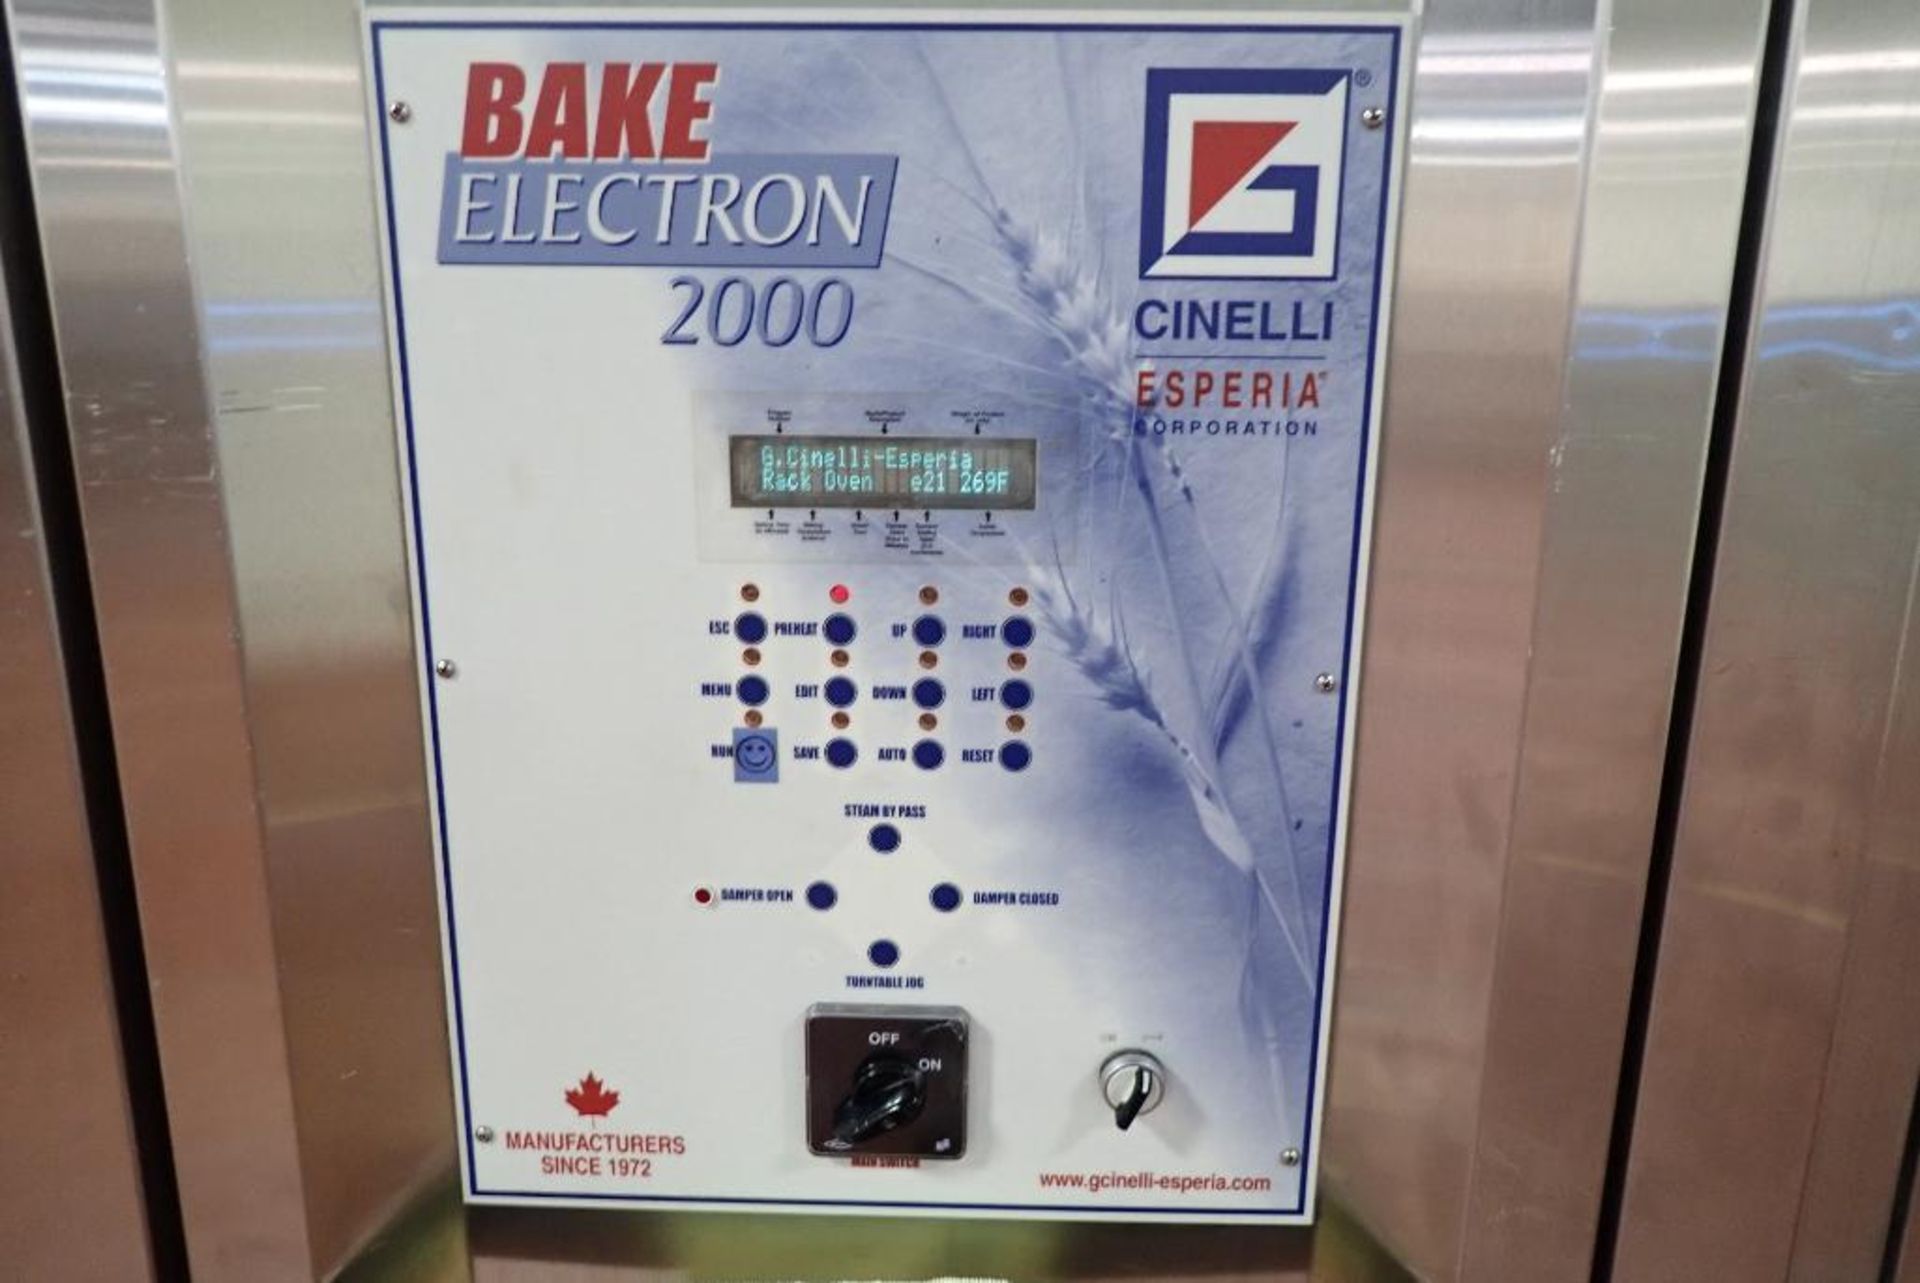 2005 Cinelli Bake Electron 2000 double rack oven - Image 2 of 21